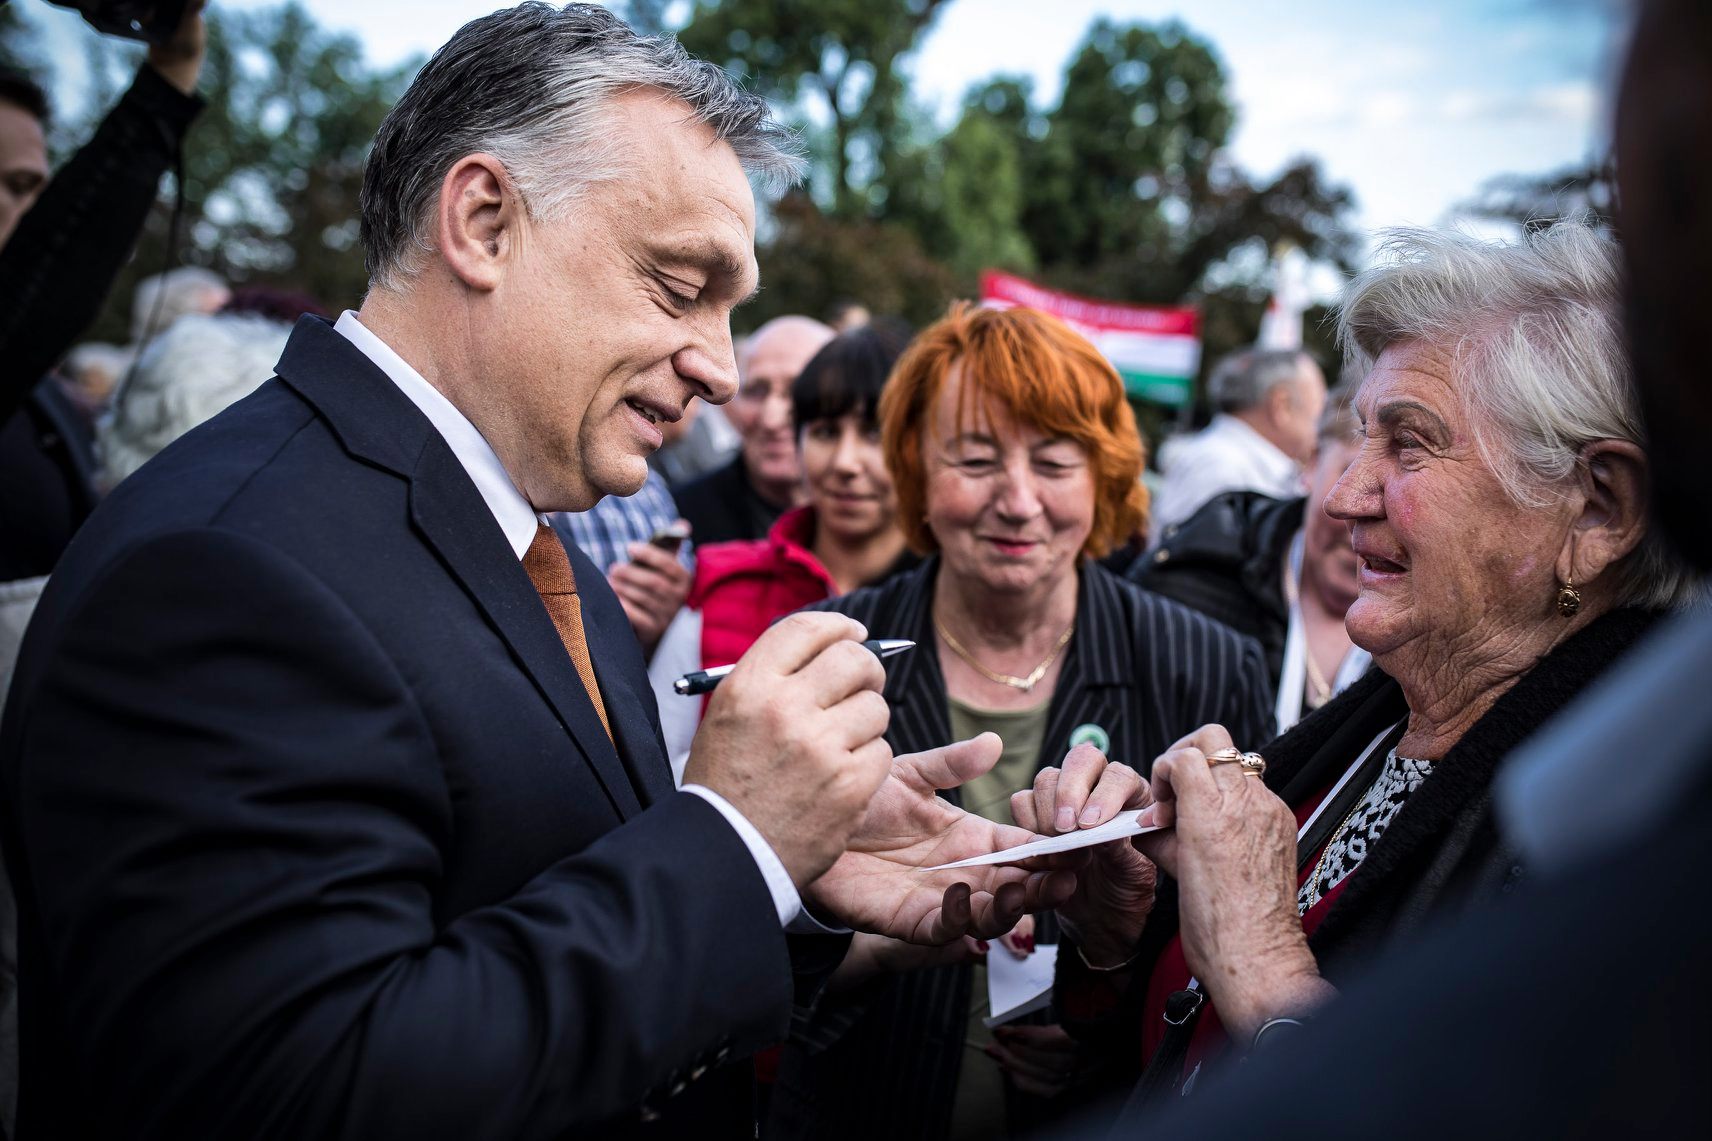 Négyszer kérdezték Orbánt Tiborcz sikereiről, de levegőnek nézte a riportert